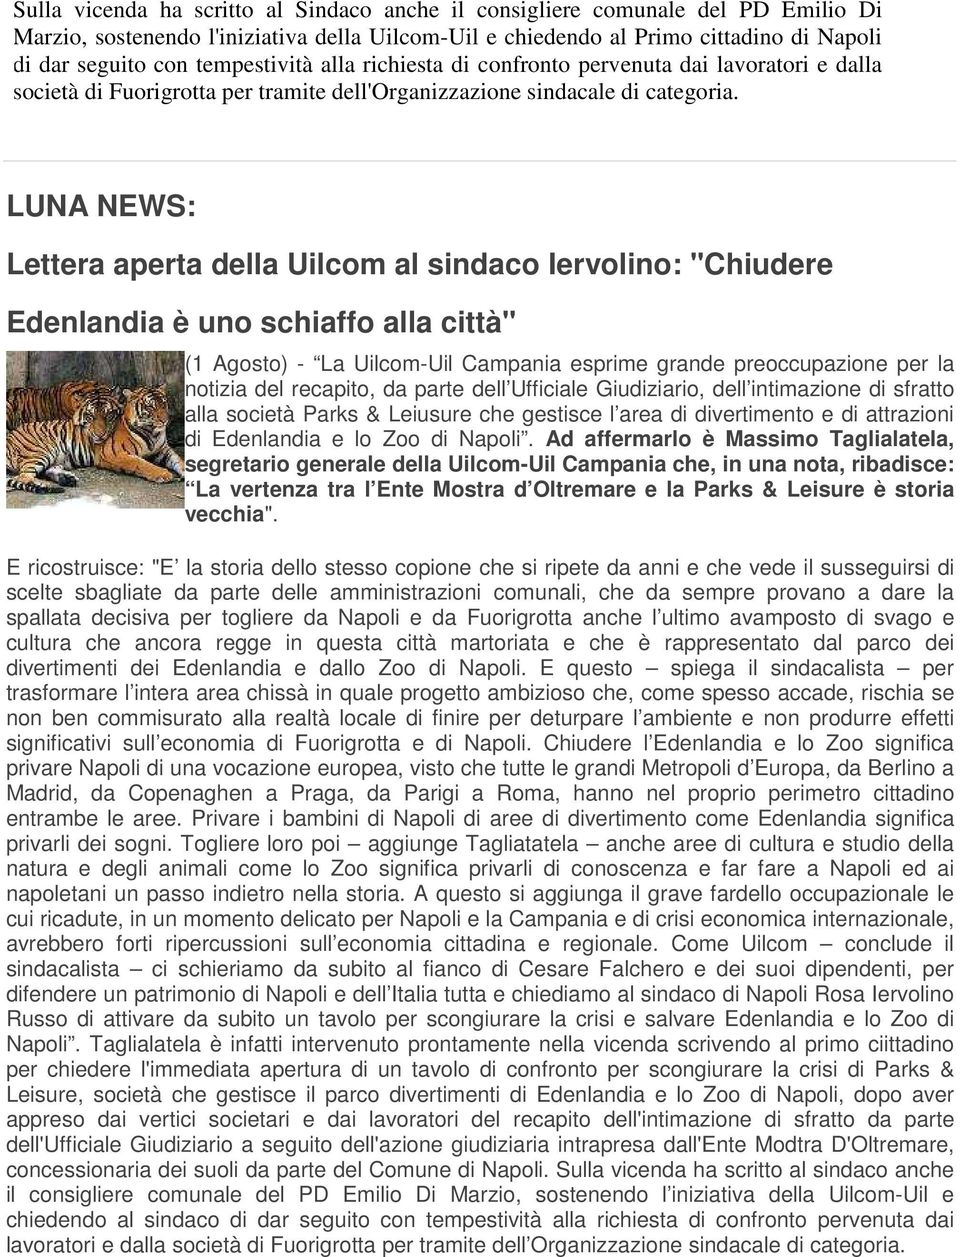 LUNA NEWS: Lettera aperta della Uilcom al sindaco Iervolino: "Chiudere Edenlandia è uno schiaffo alla città" (1 Agosto) - La Uilcom-Uil Campania esprime grande preoccupazione per la notizia del